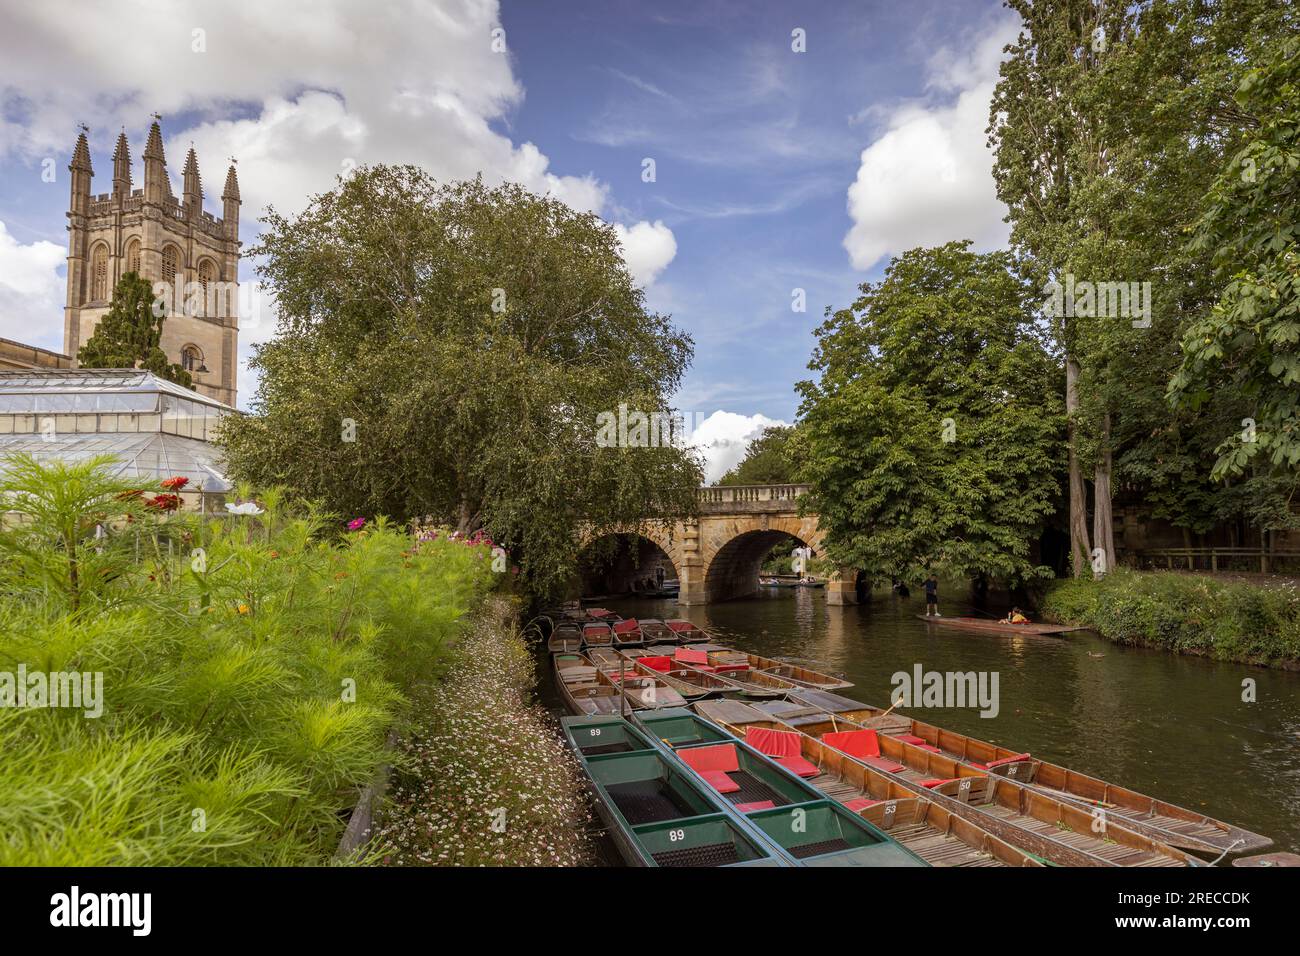 Touristes punting dans la rivière Cherwell à côté des jardins botaniques d'Oxford et Magdalen Bridge, Oxfordshire, Angleterre Banque D'Images